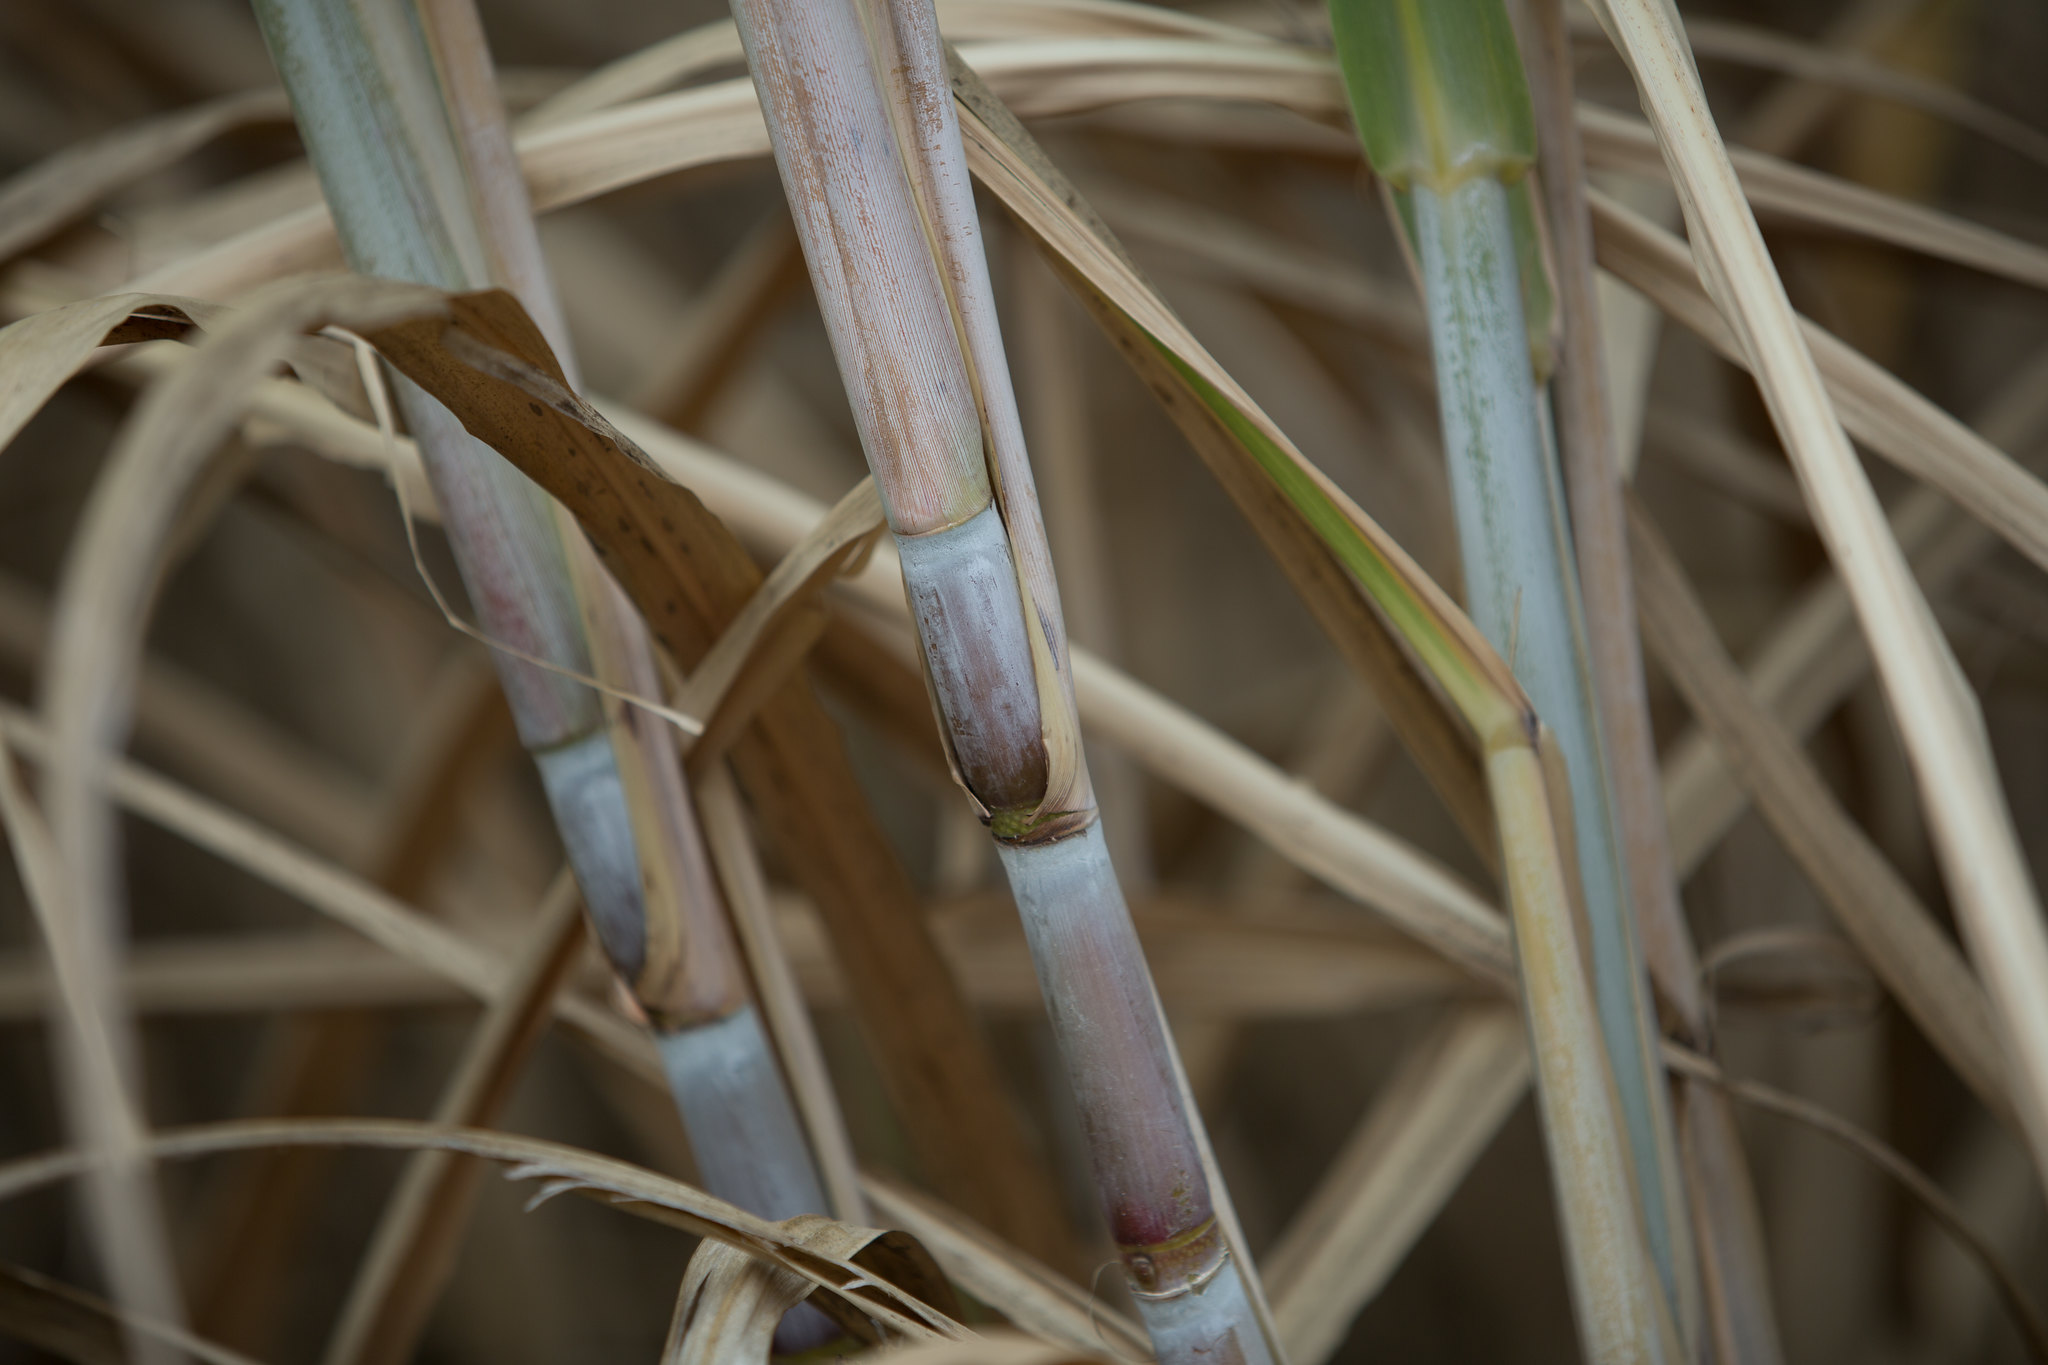 Início da safra avança e moagem da cana-de-açúcar alcança 23,82 milhões de toneladas na segunda quinzena de abril